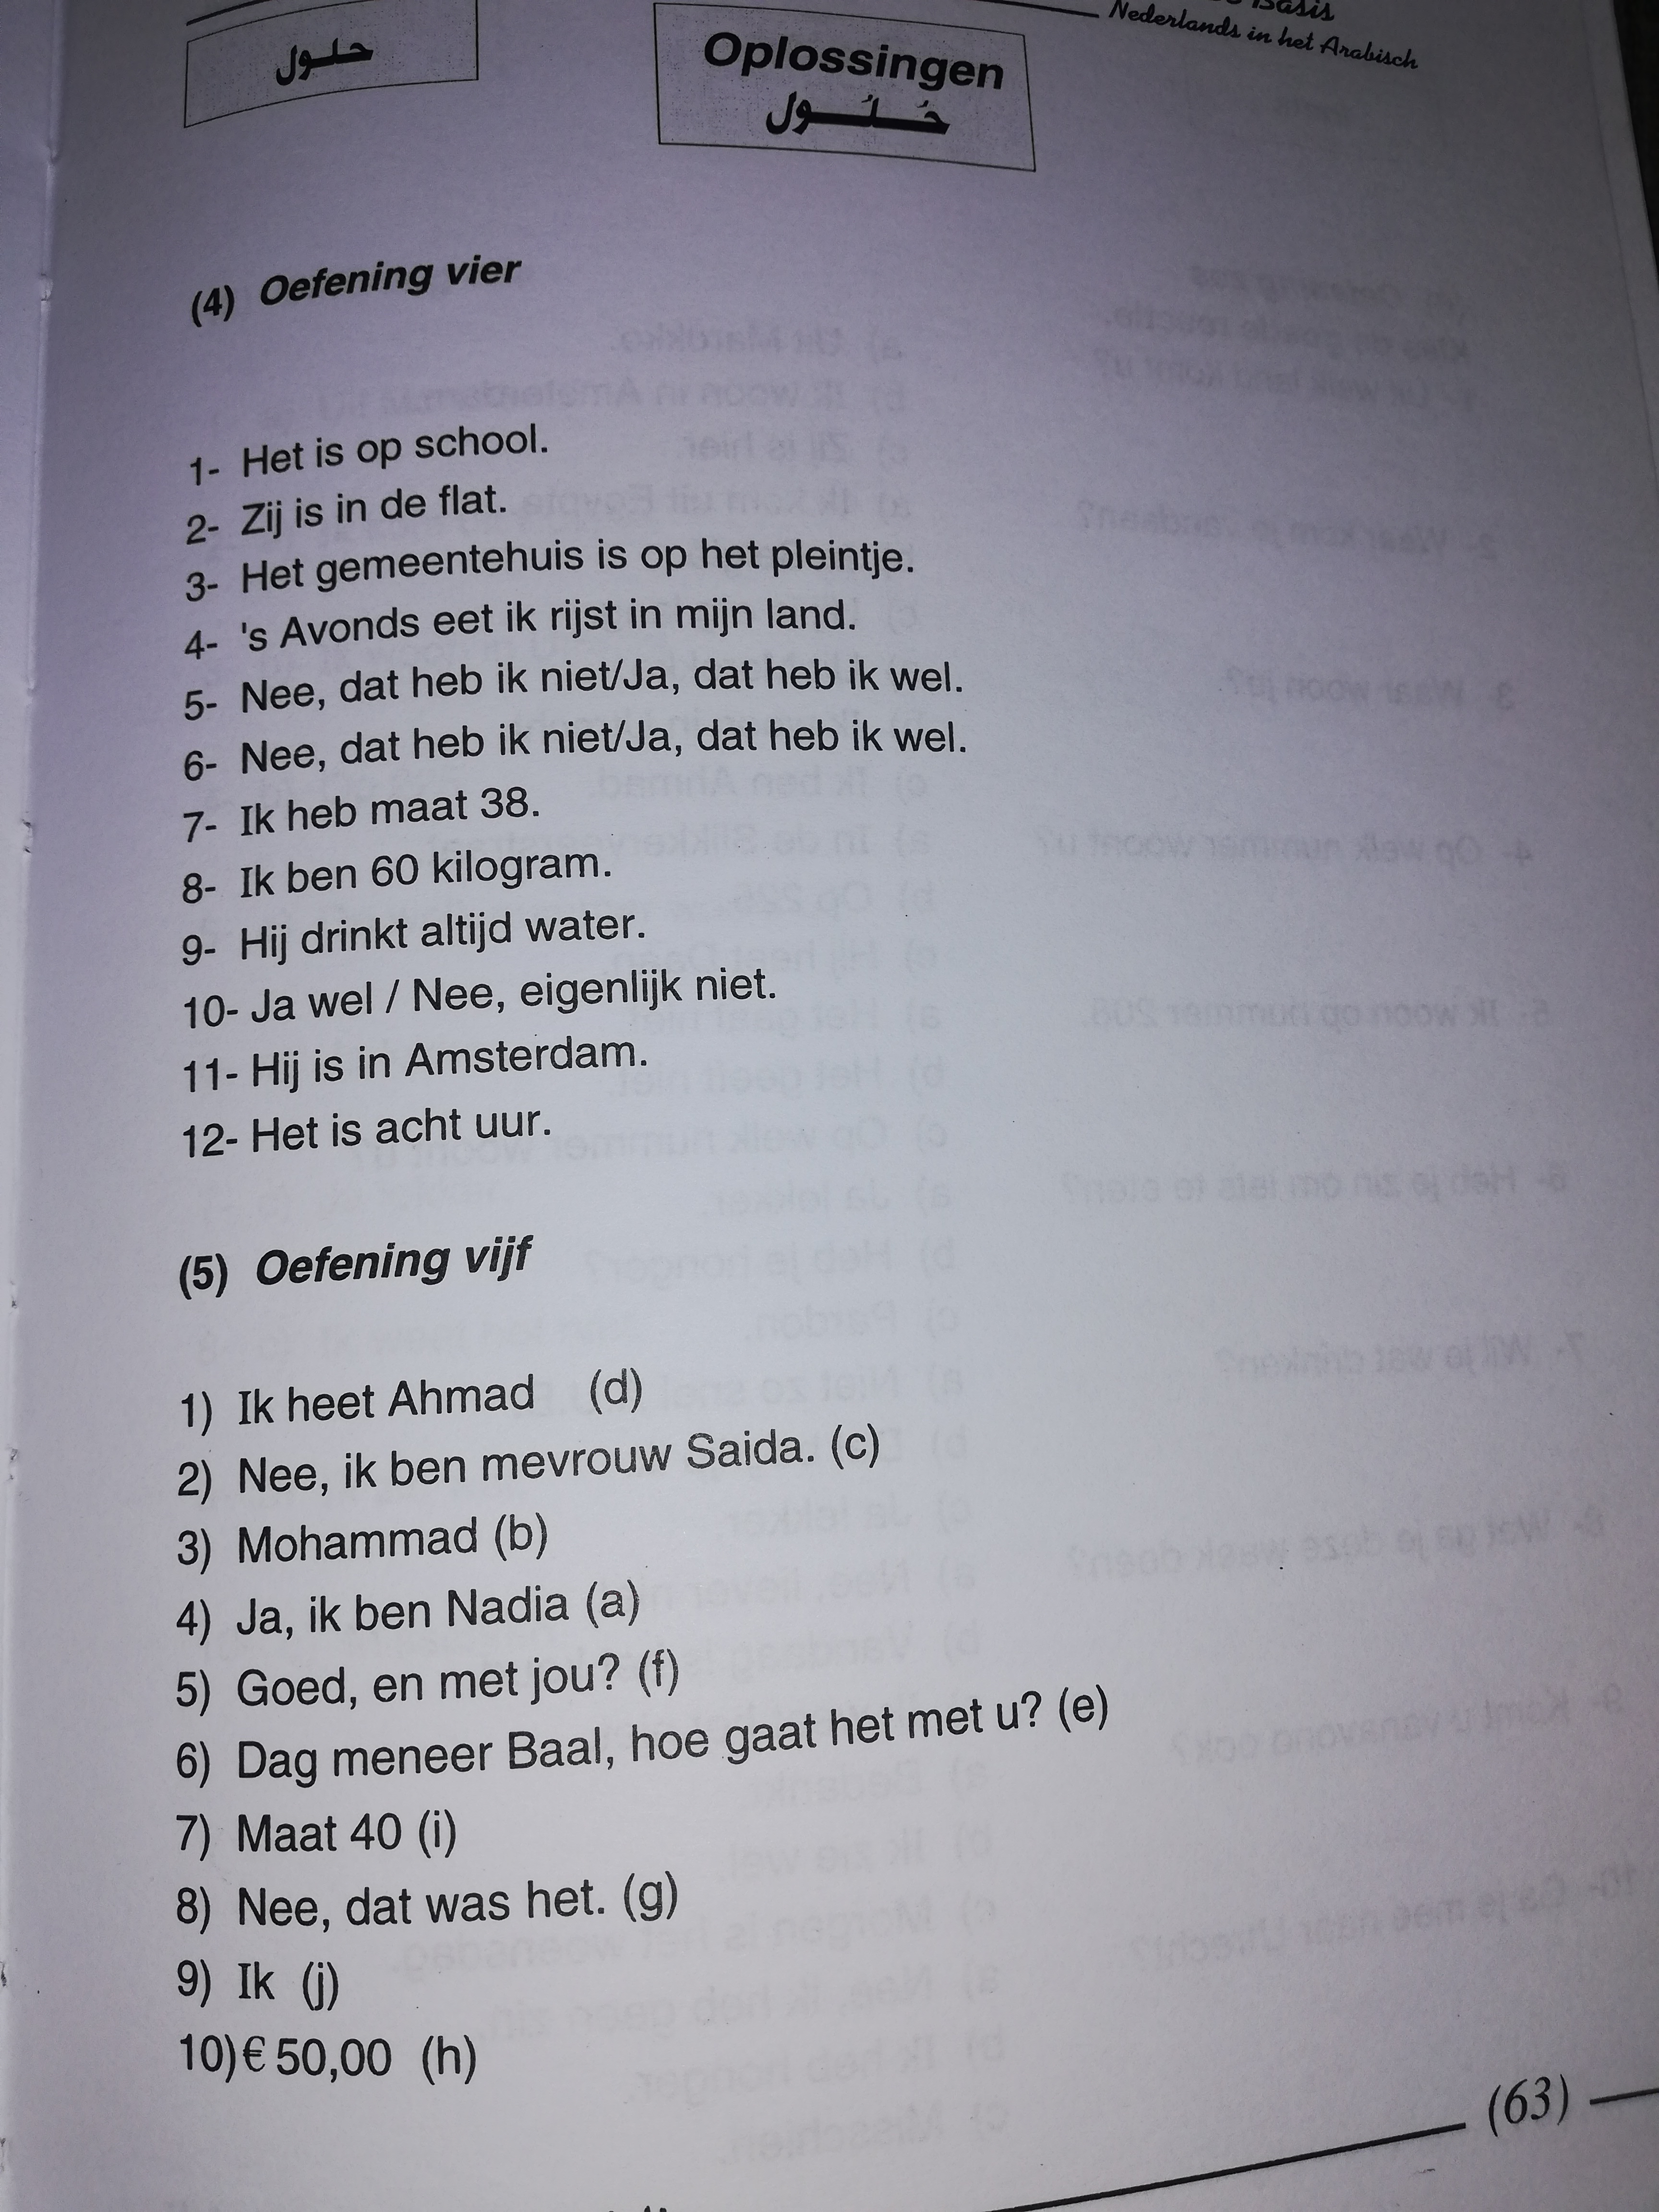 اختبر مستواك في  اللغة الهولندية عن طريق التمرين الموجود في الصفحة